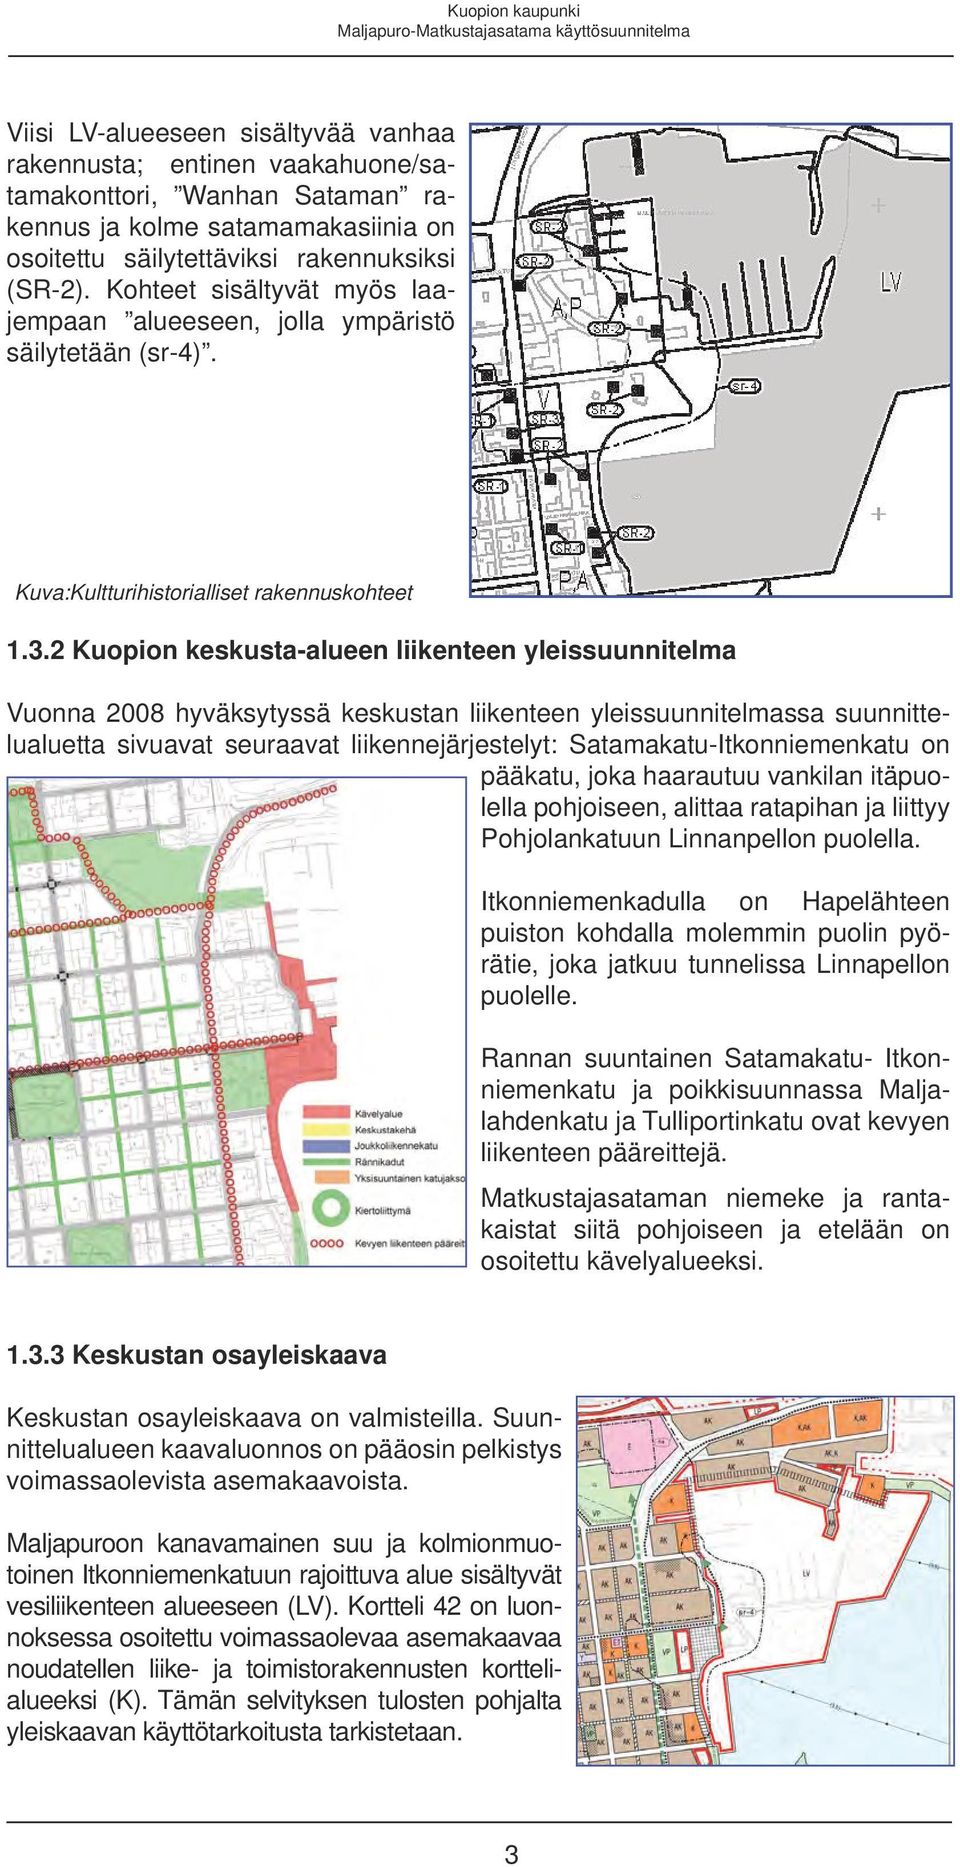 2 Kuopion keskusta-alueen liikenteen yleissuunnitelma Vuonna 2008 hyväksytyssä keskustan liikenteen yleissuunnitelmassa suunnittelualuetta sivuavat seuraavat liikennejärjestelyt: